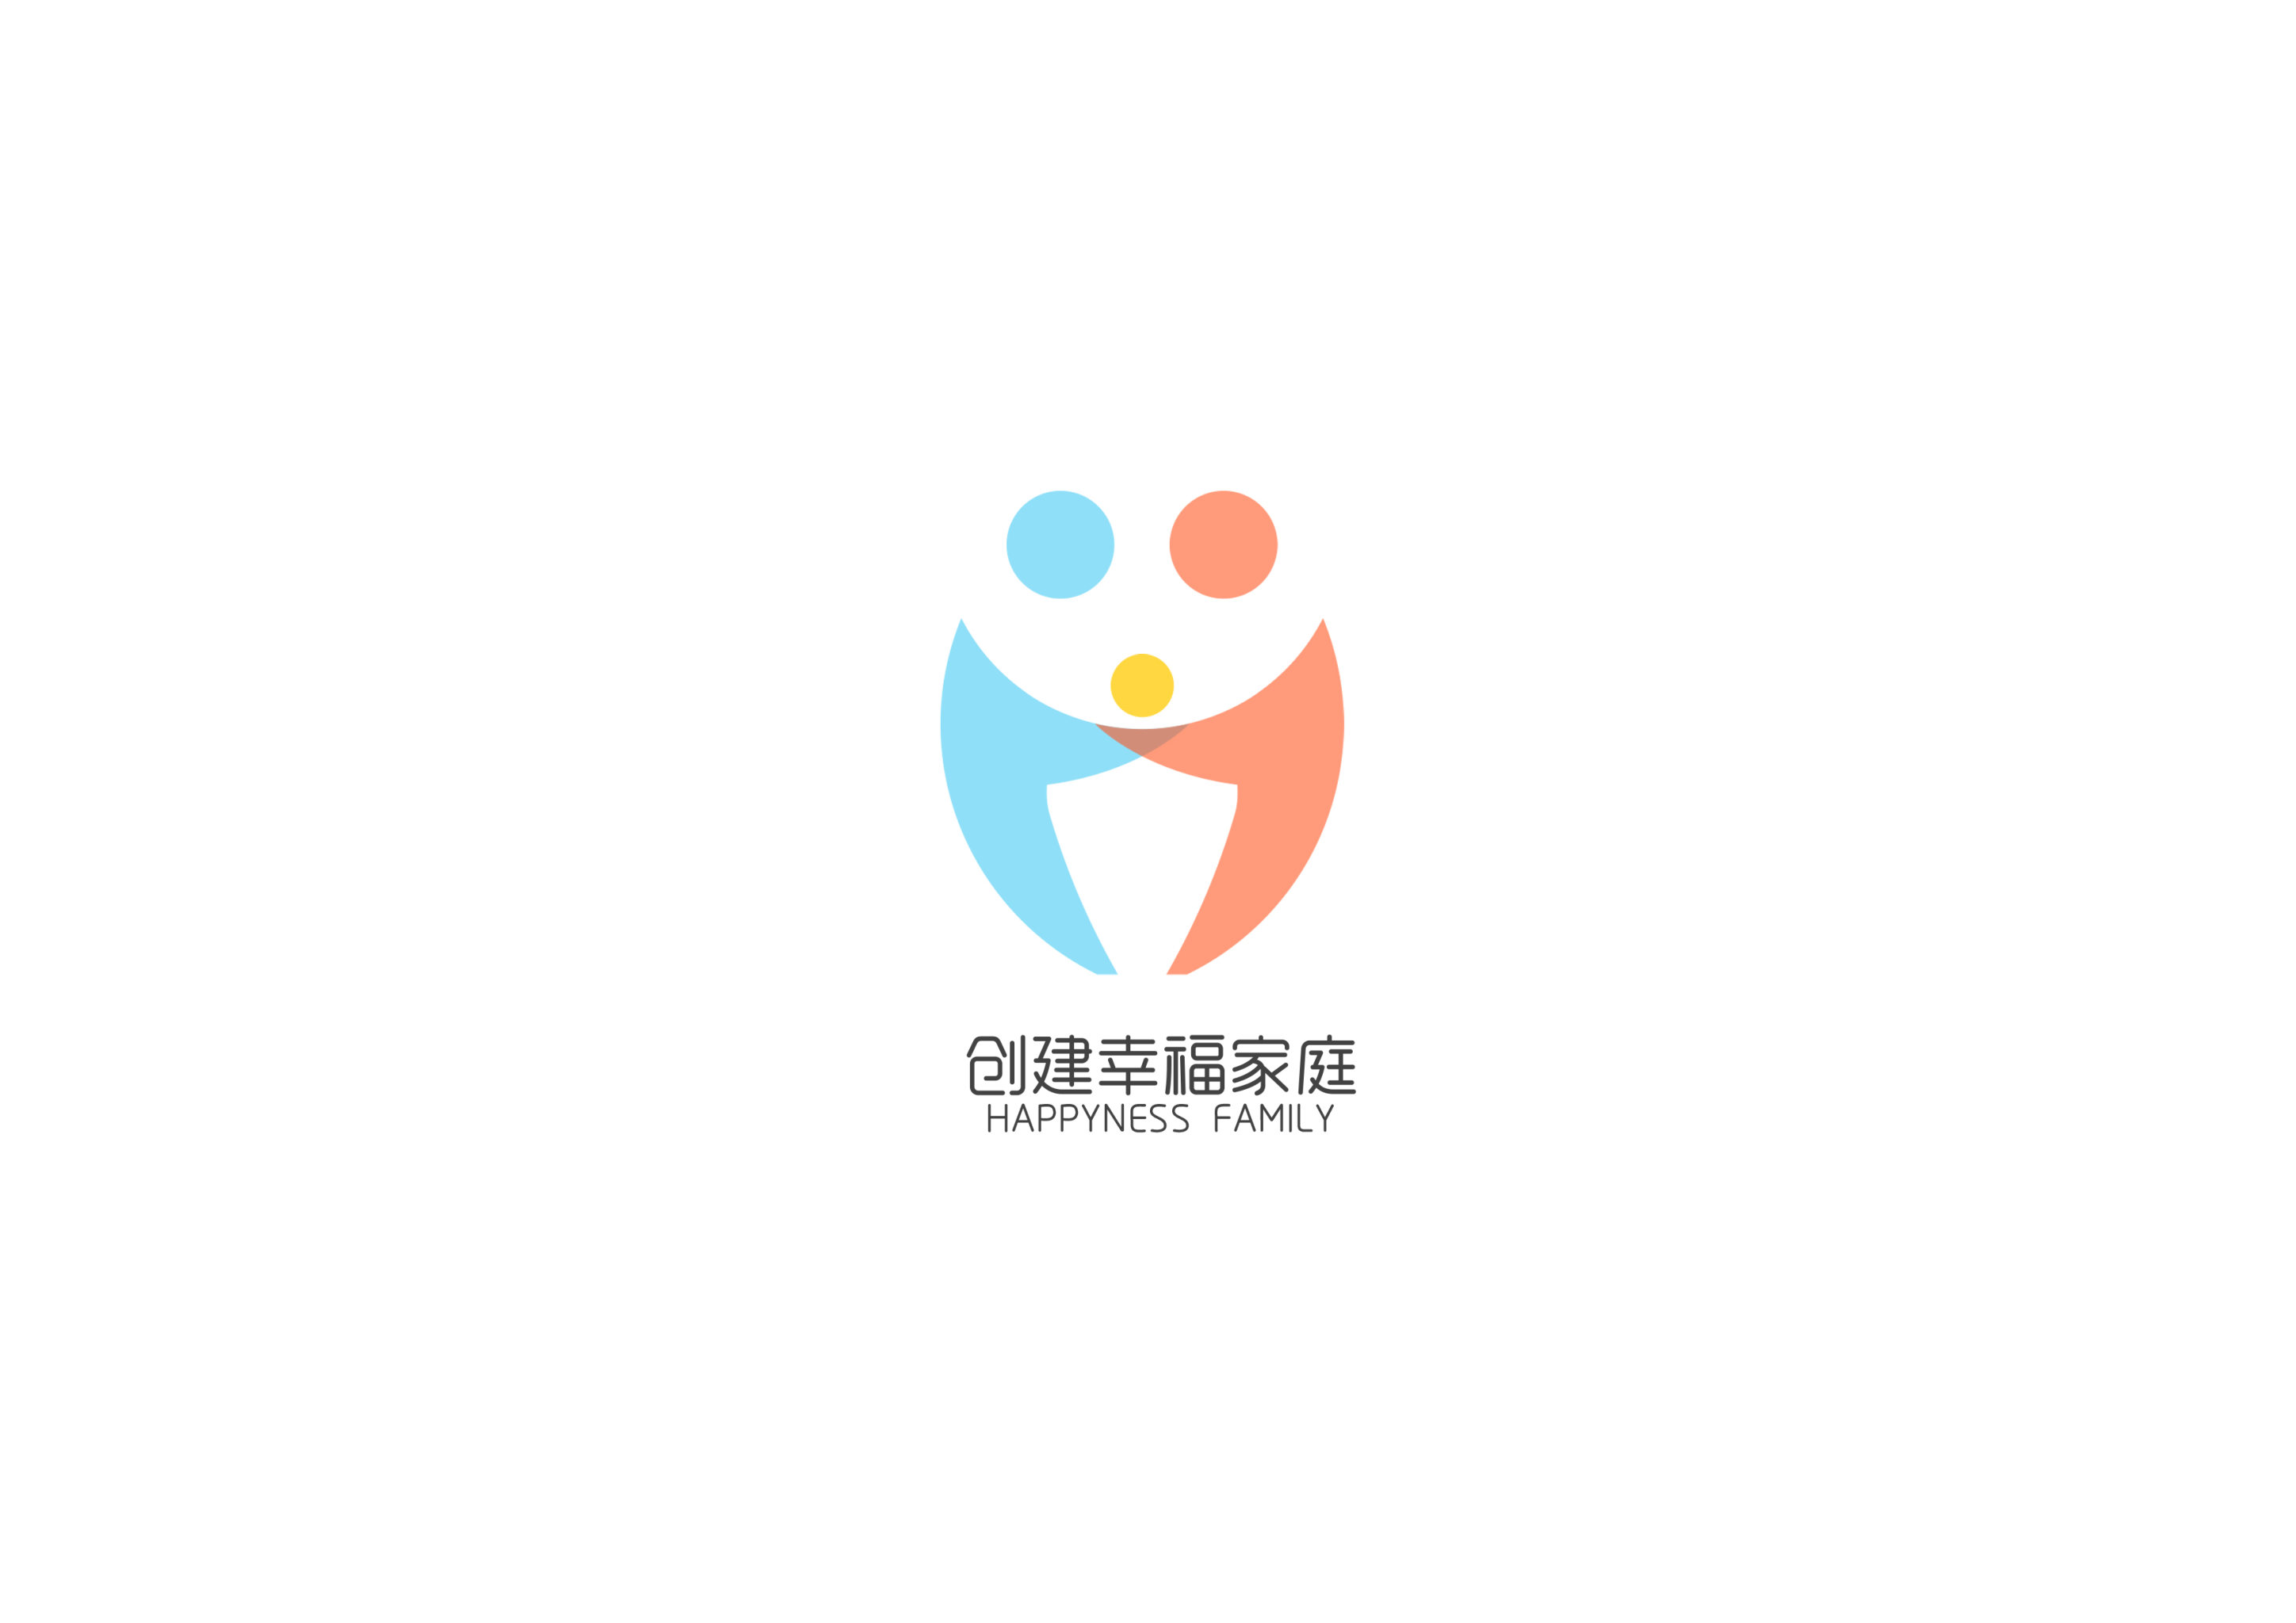 创建幸福家庭logo